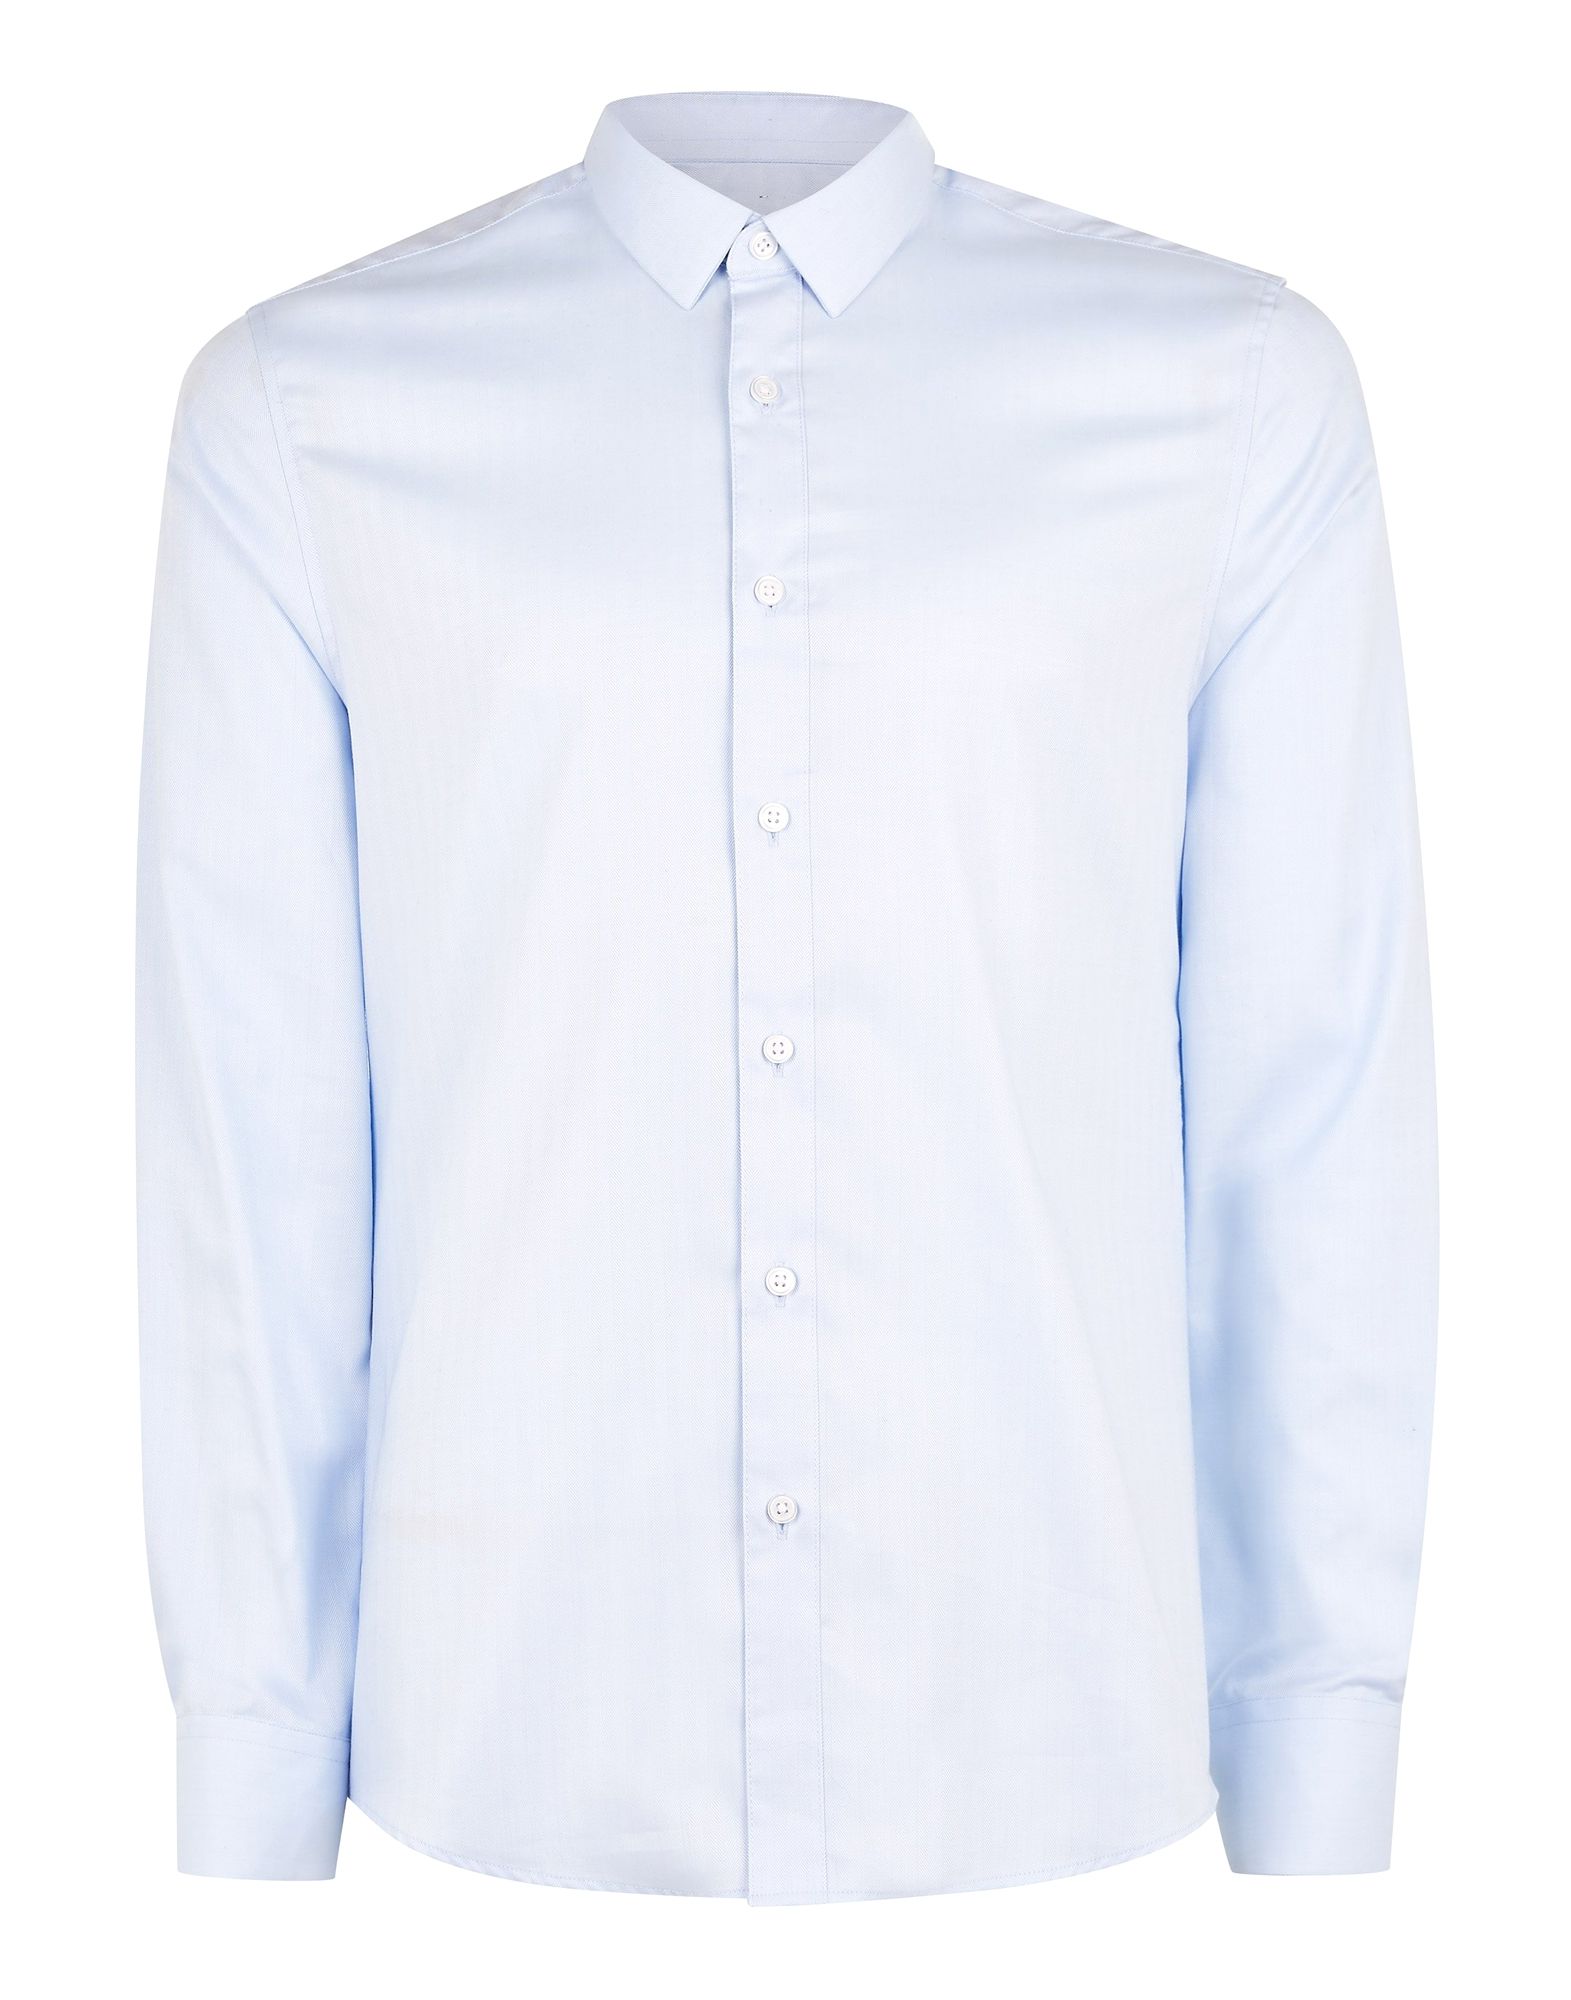 《セール開催中》TOPMAN メンズ シャツ スカイブルー M コットン 100% Premium Light Blue Herringbone Smart Shirt